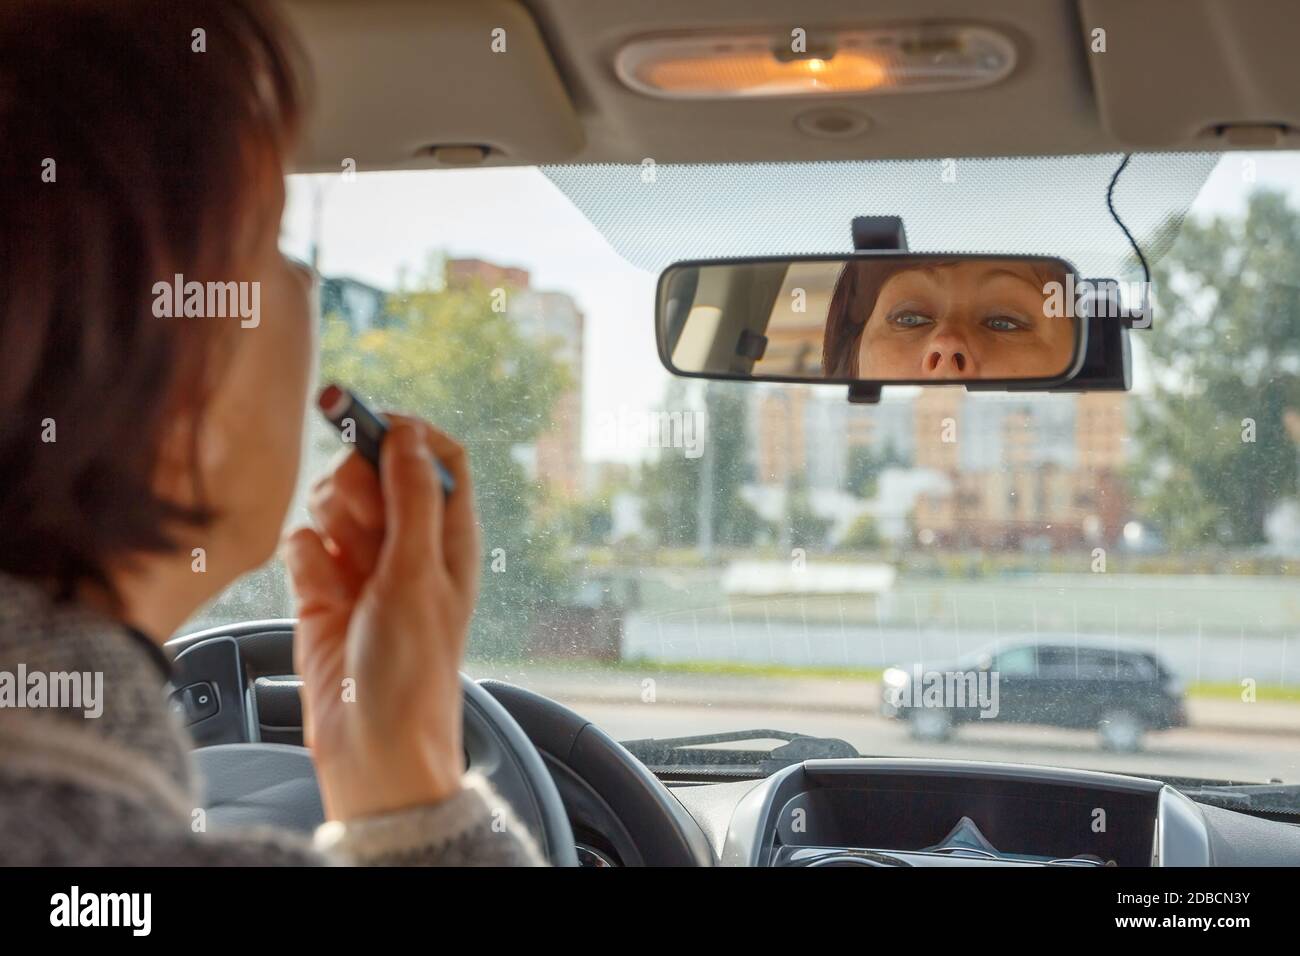 La femme regarde dans le rétroviseur intérieur de la voiture et peint ses  lèvres Photo Stock - Alamy